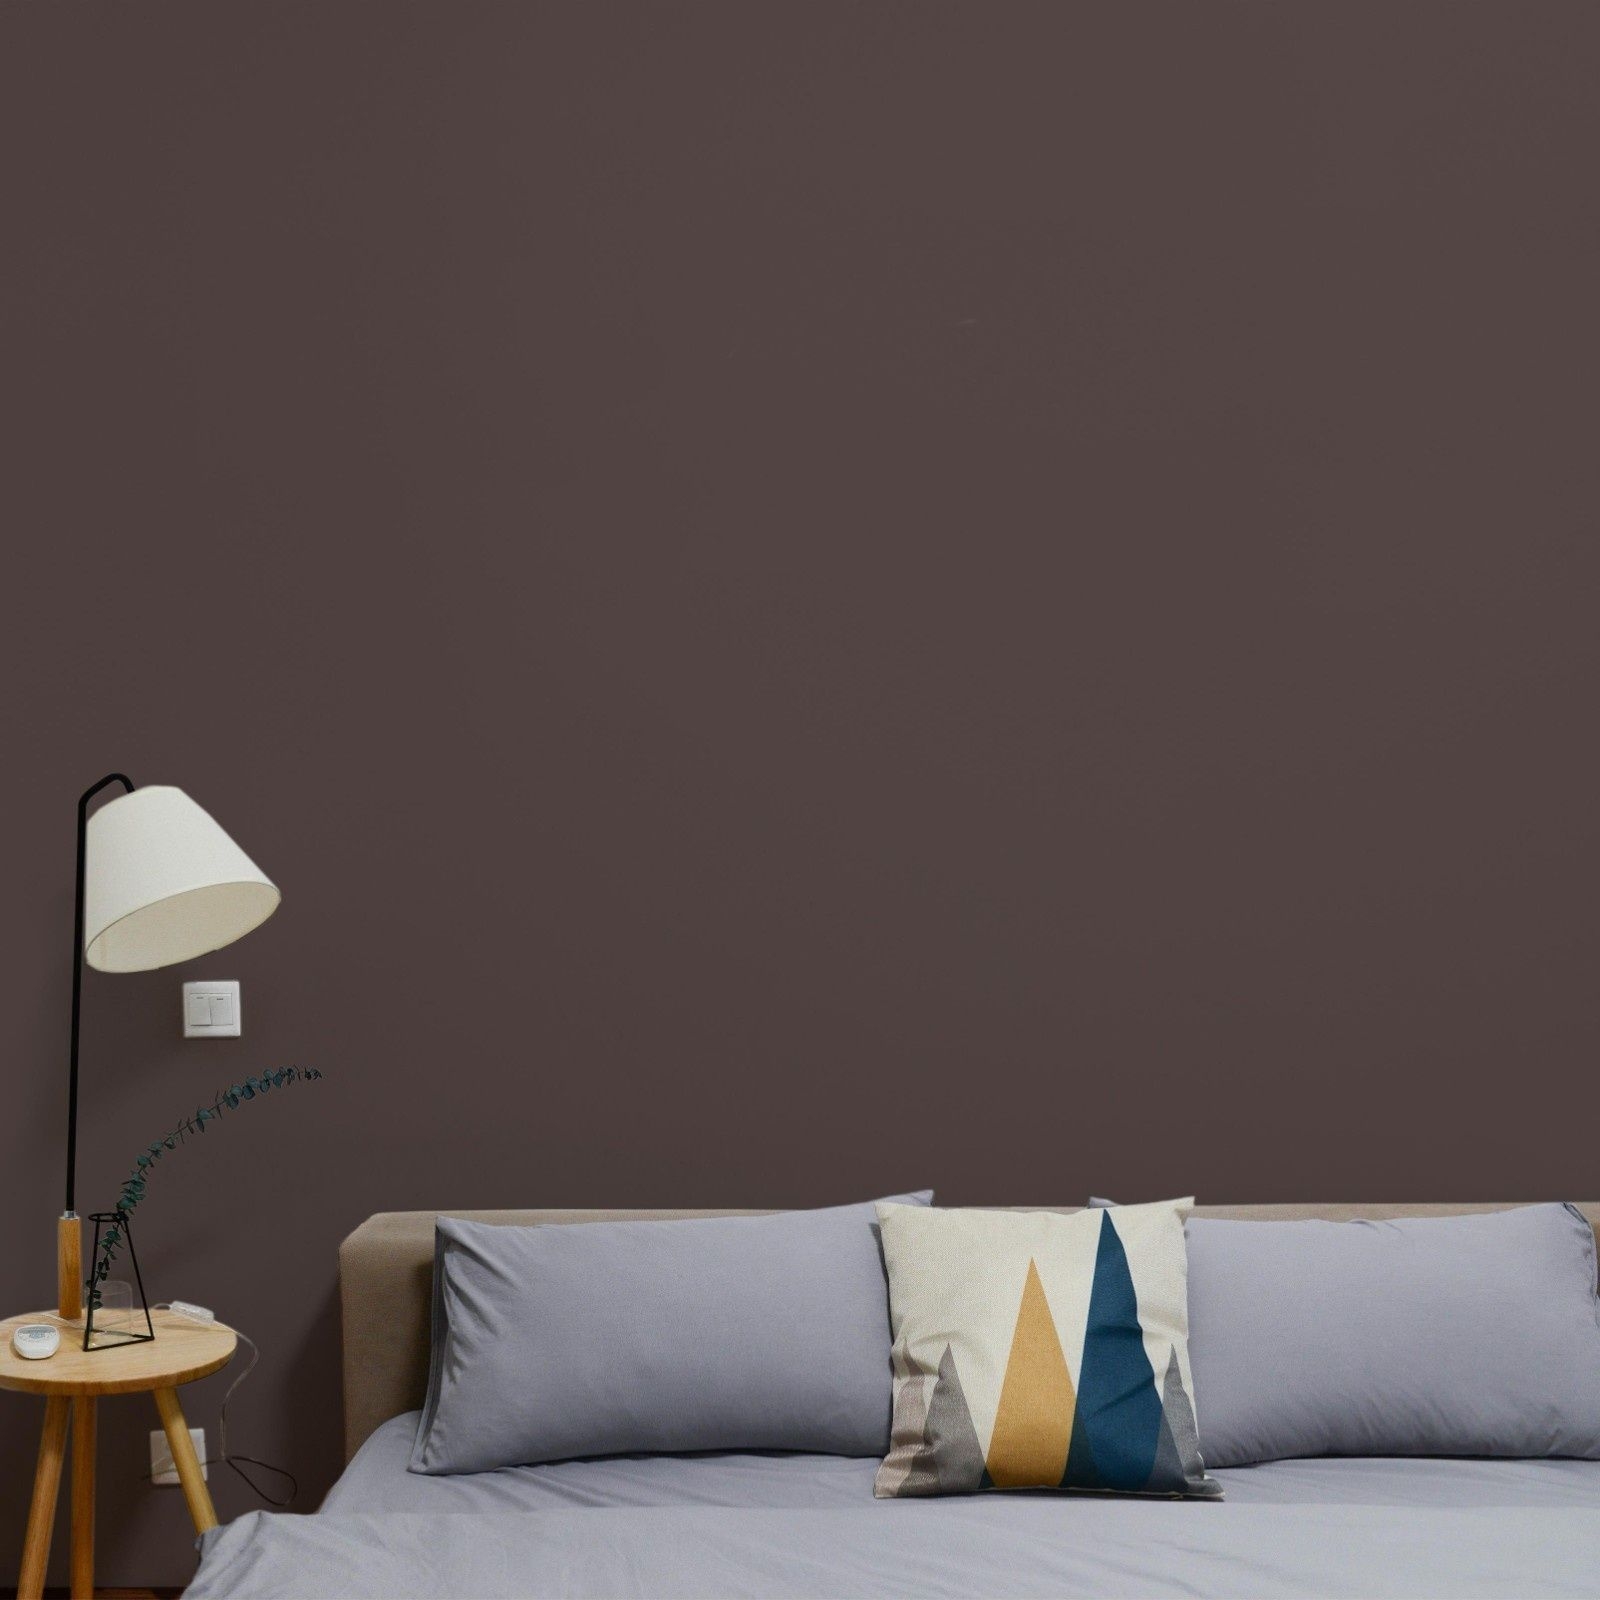 Dunkelbraune nachhaltige Wandfarbe Space Cake von Mynt im Schlafzimmer mit hellgrauem Bettbezug.